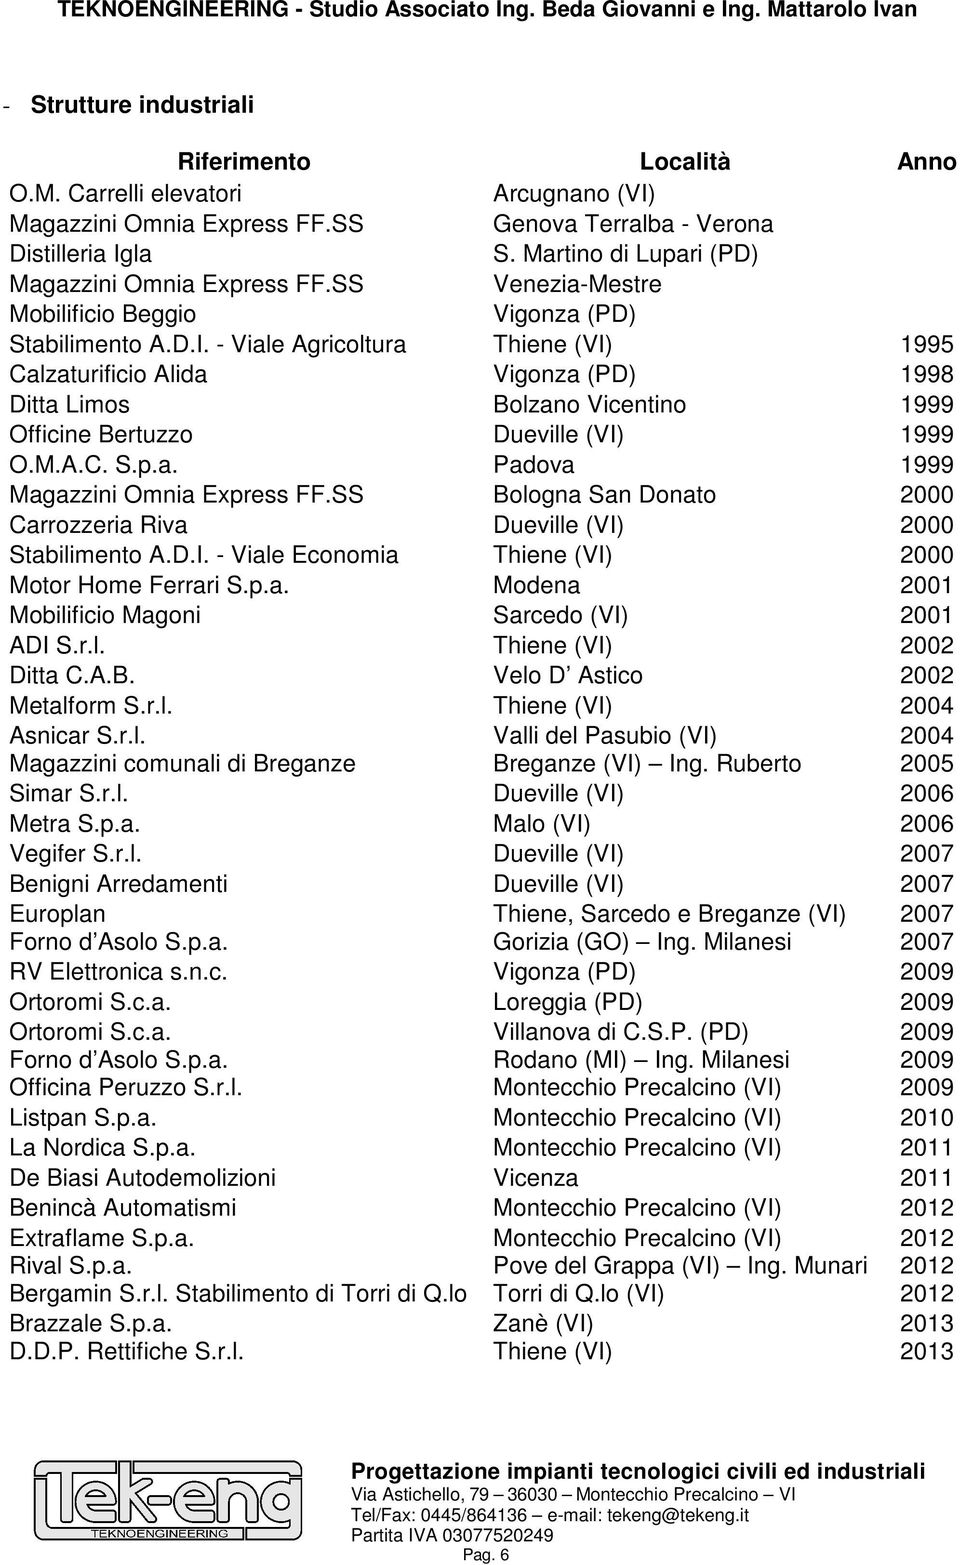 - Viale Agricoltura Thiene (VI) 1995 Calzaturificio Alida Vigonza (PD) 1998 Ditta Limos Bolzano Vicentino 1999 Officine Bertuzzo Dueville (VI) 1999 O.M.A.C. S.p.a. Padova 1999 Magazzini Omnia Express FF.